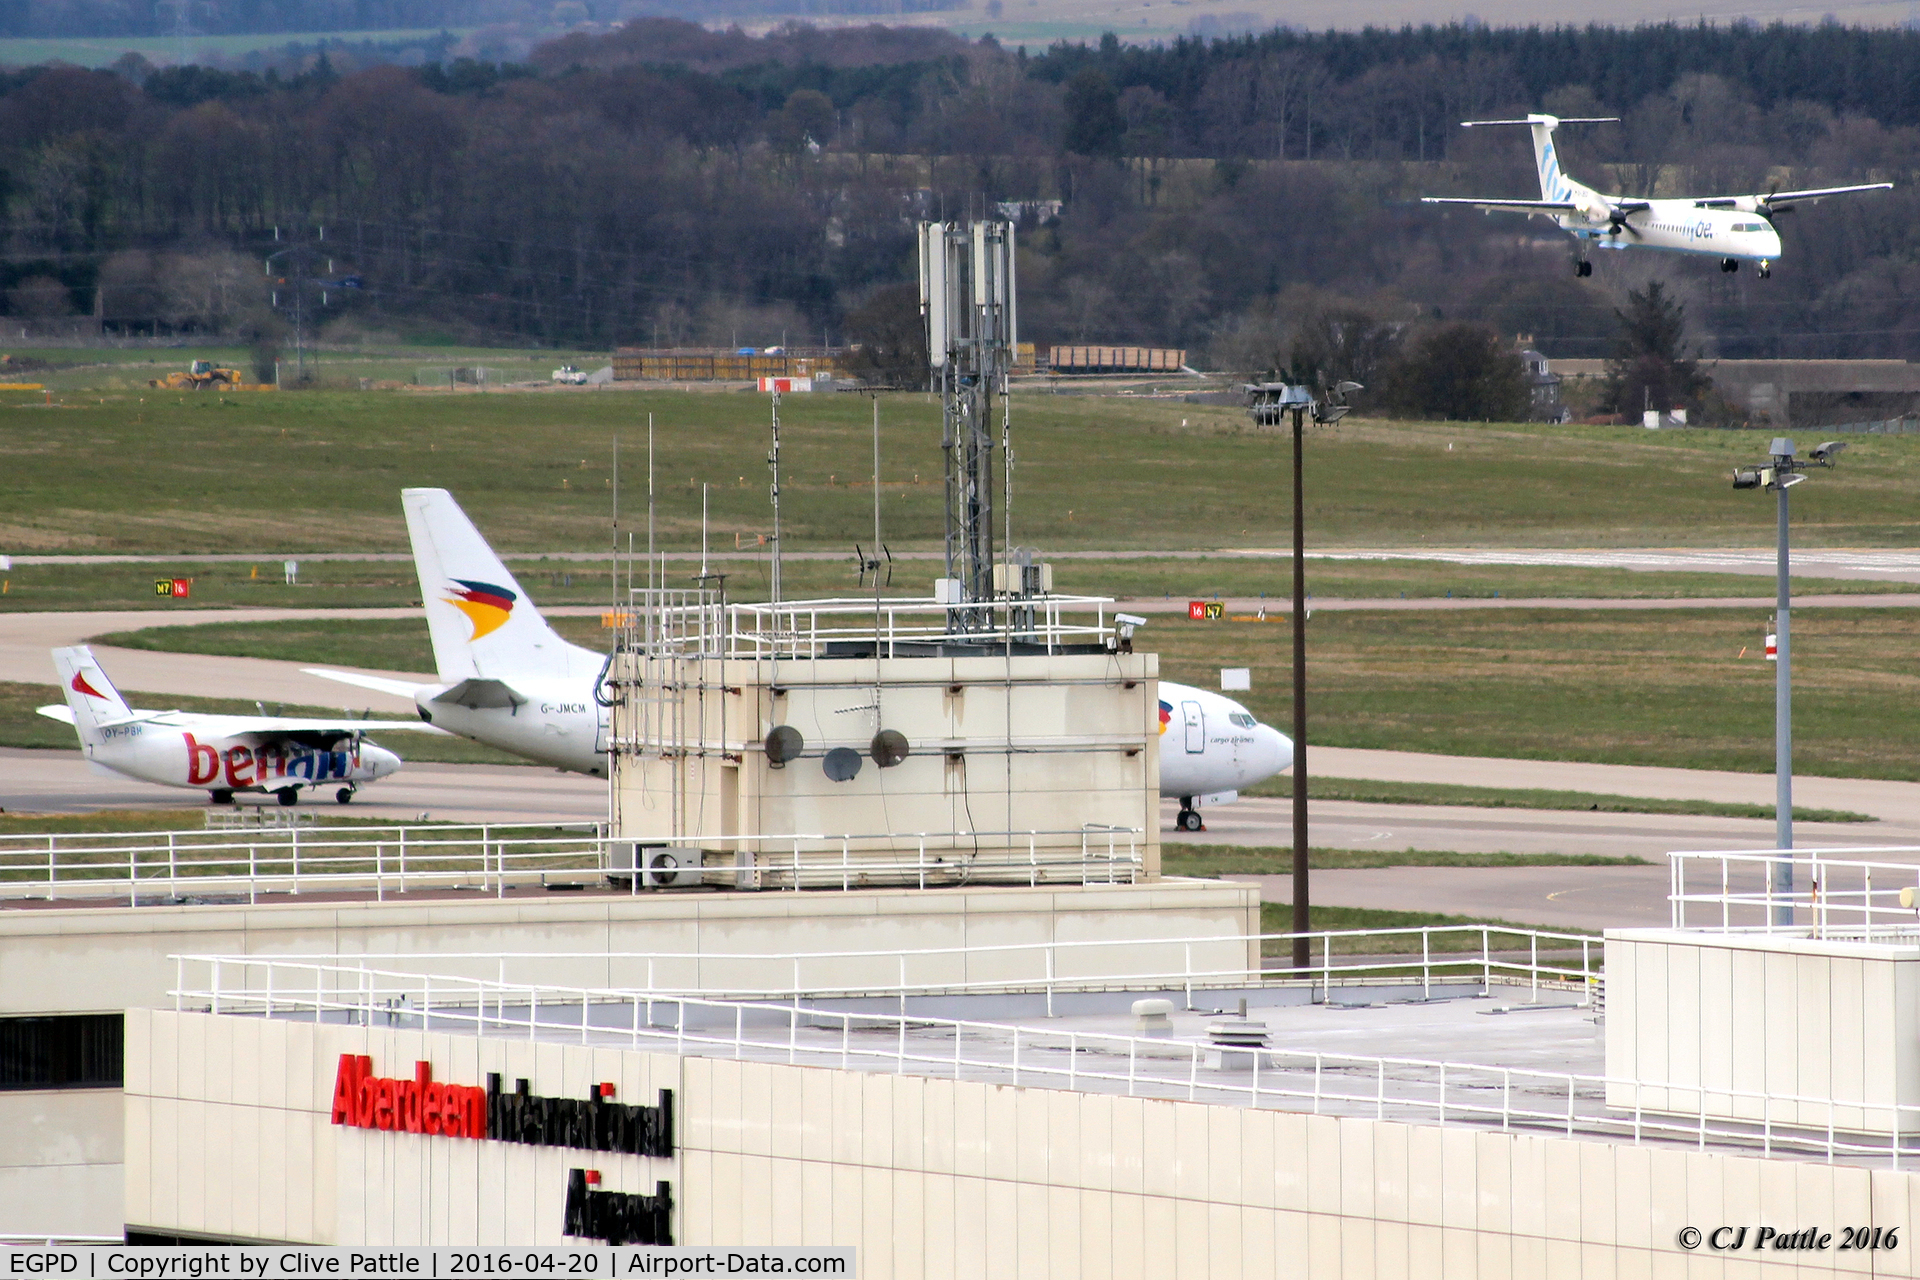 Aberdeen Airport, Aberdeen, Scotland United Kingdom (EGPD) - Aberdeen EGPD passenger terminal general view